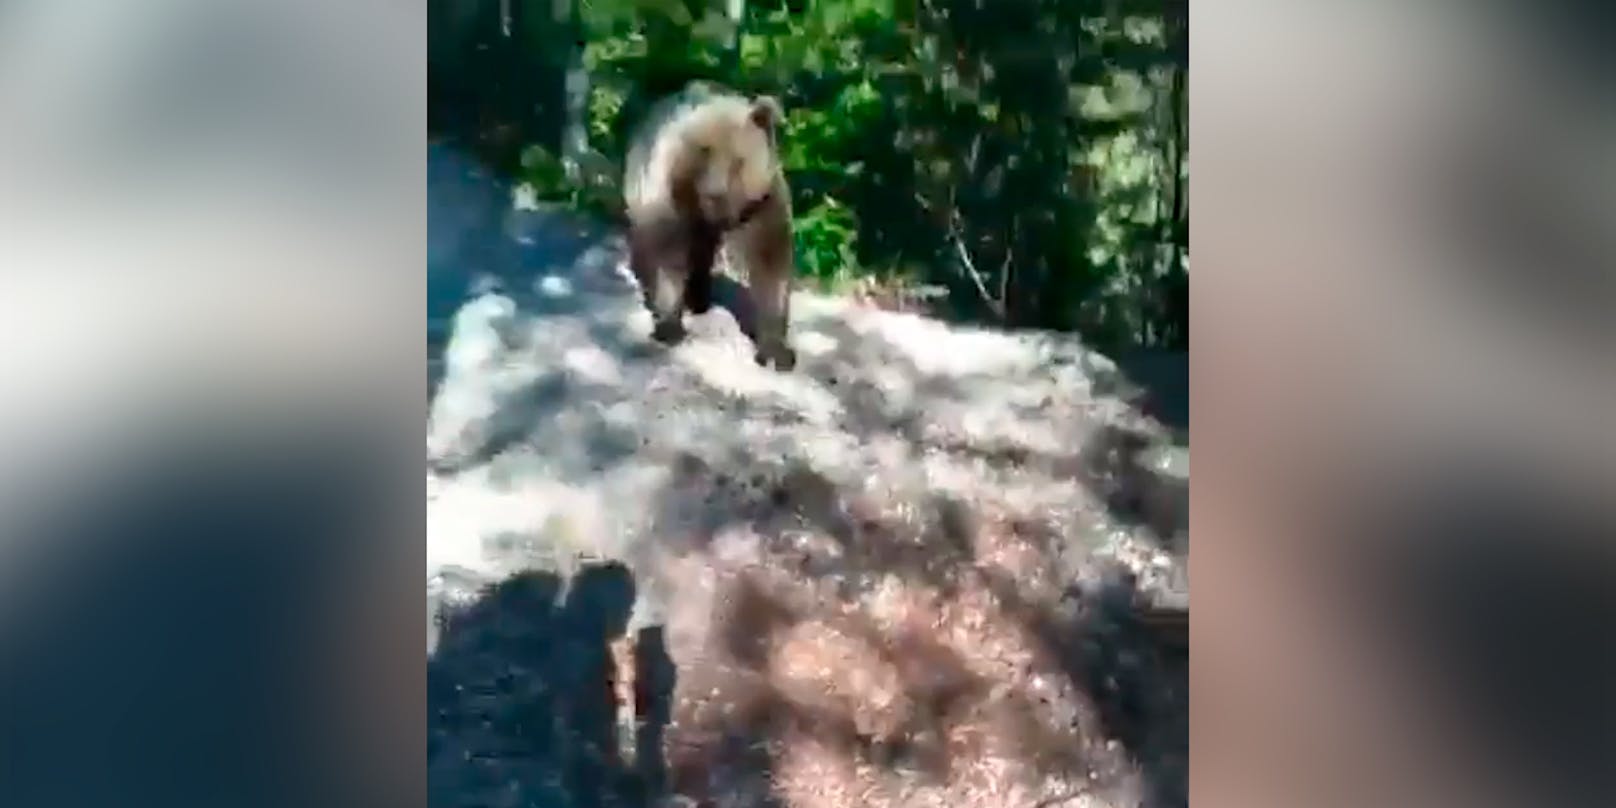 Bär verfolgt Südtiroler Wanderer auf Forstweg